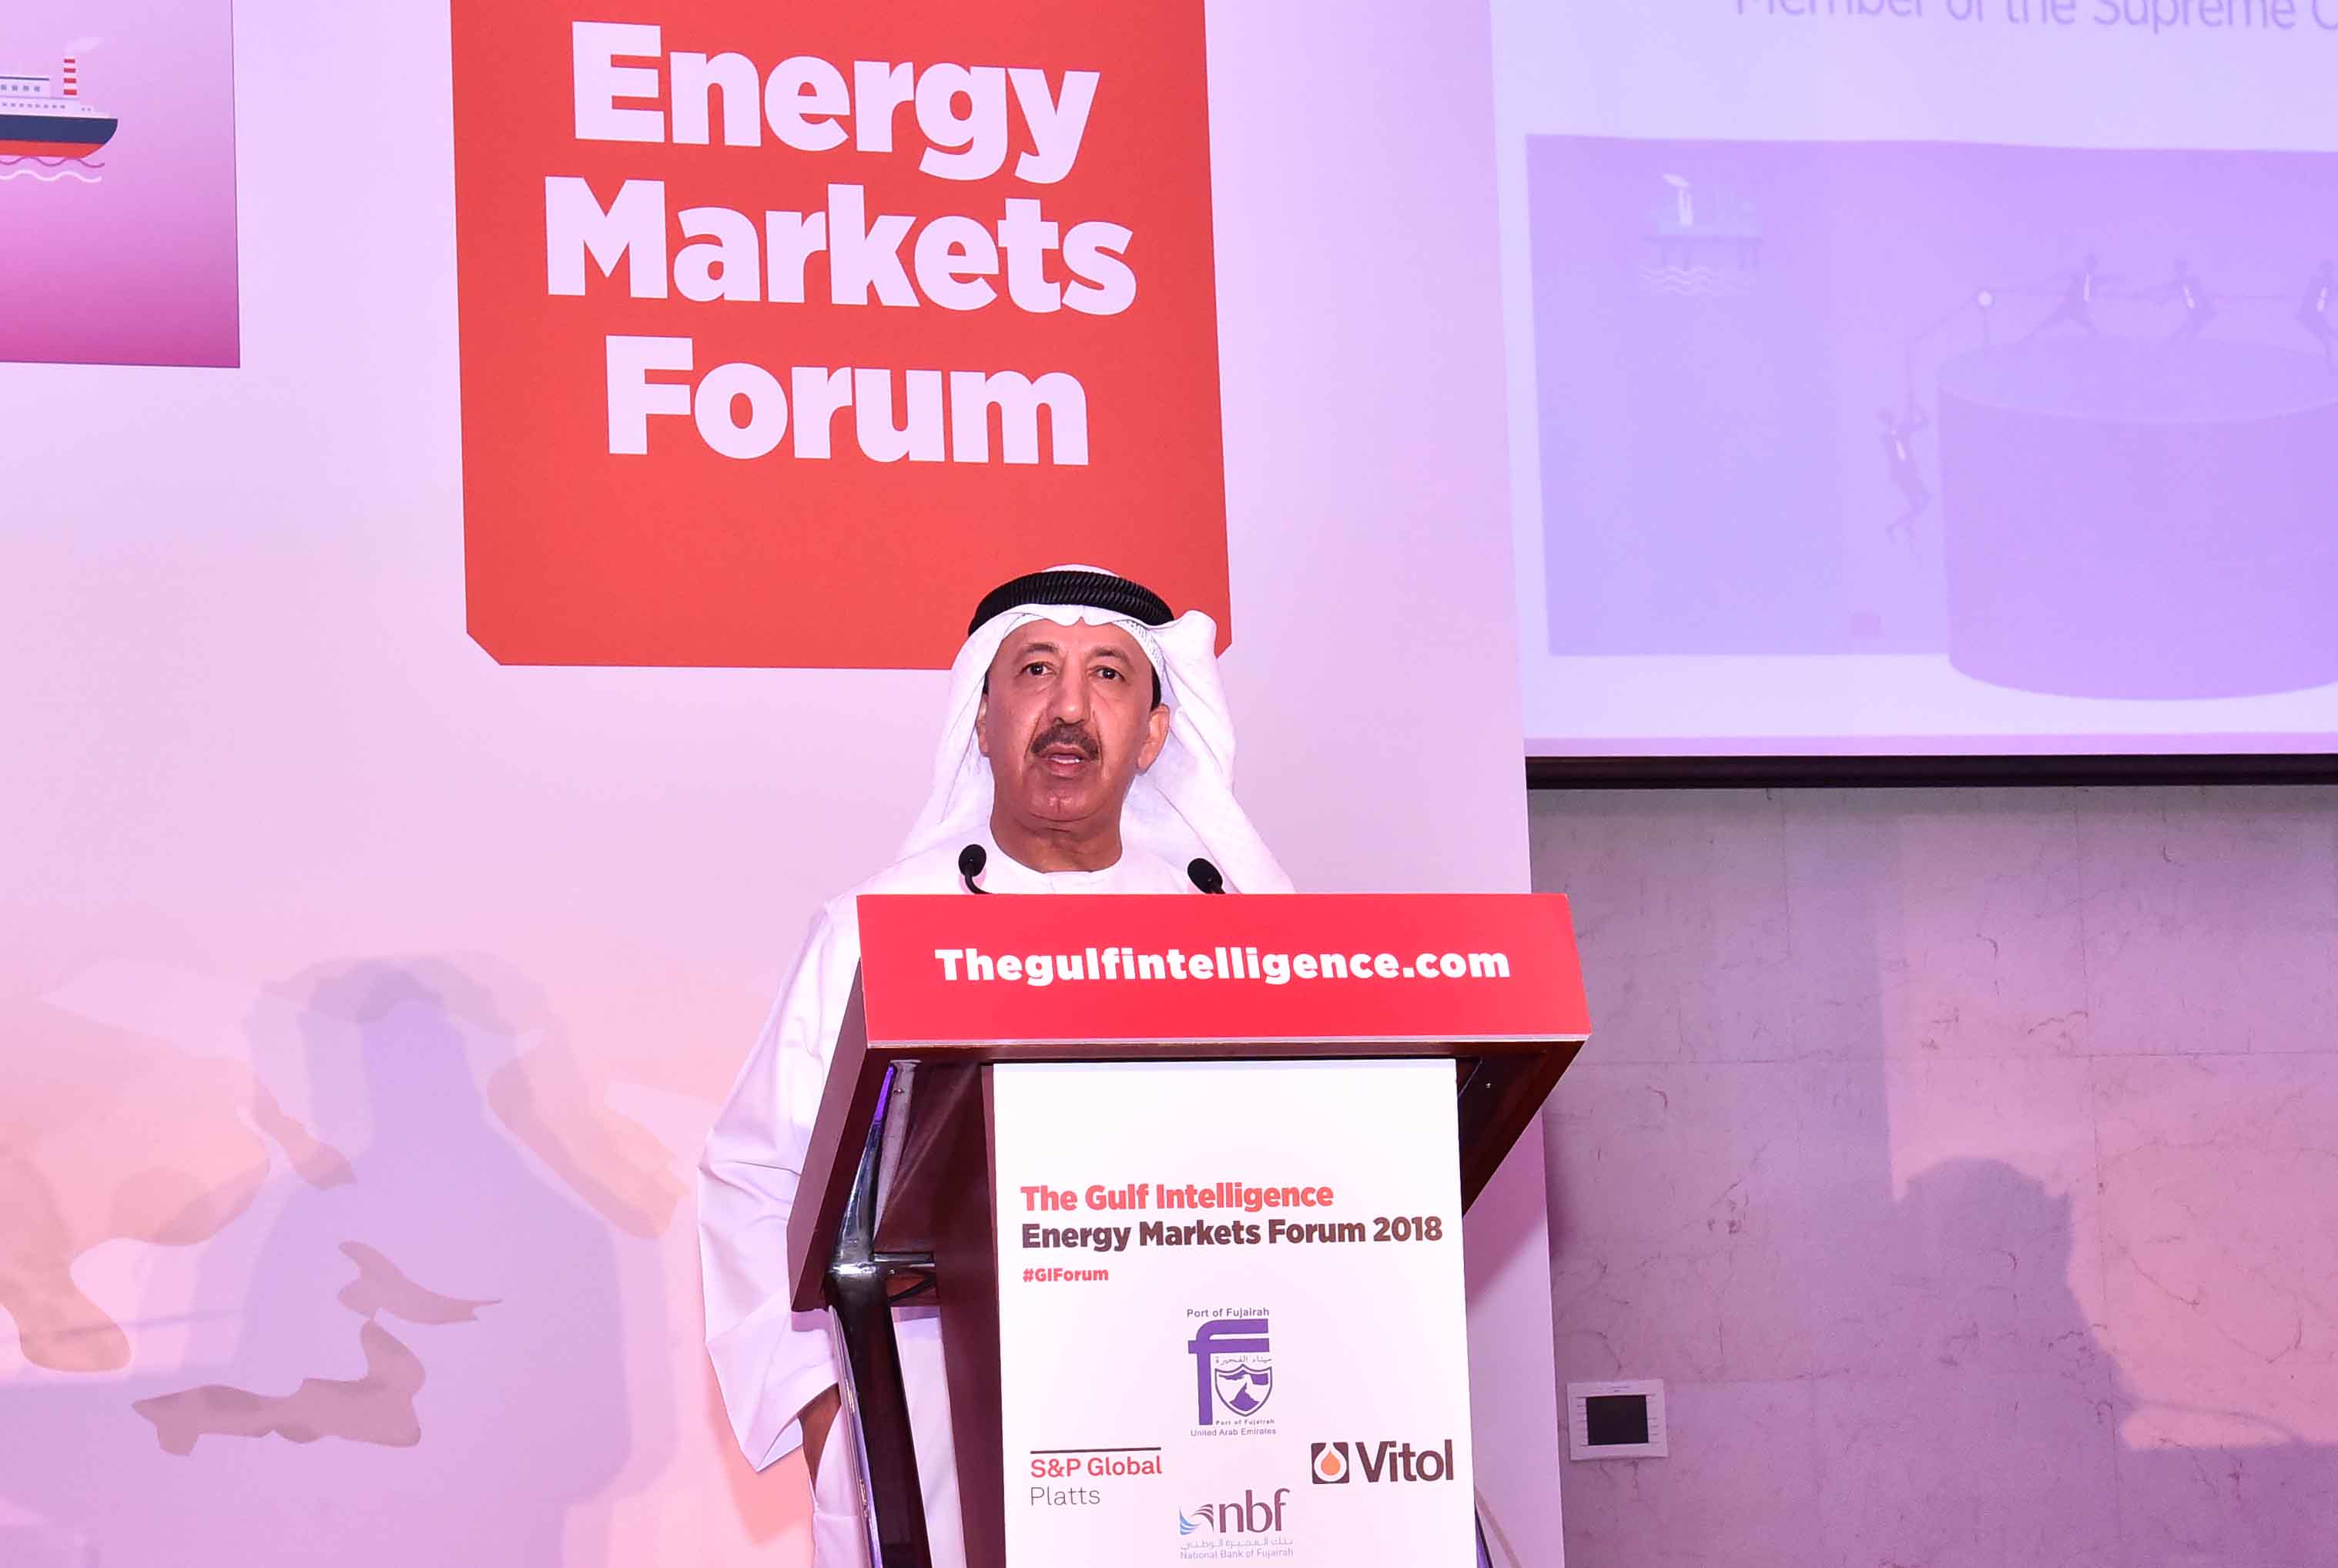 صالح الشرقي يفتتح فعاليات منتدى جلف إنتليجنس الثامن لأسواق الطاقة بالفجيرة